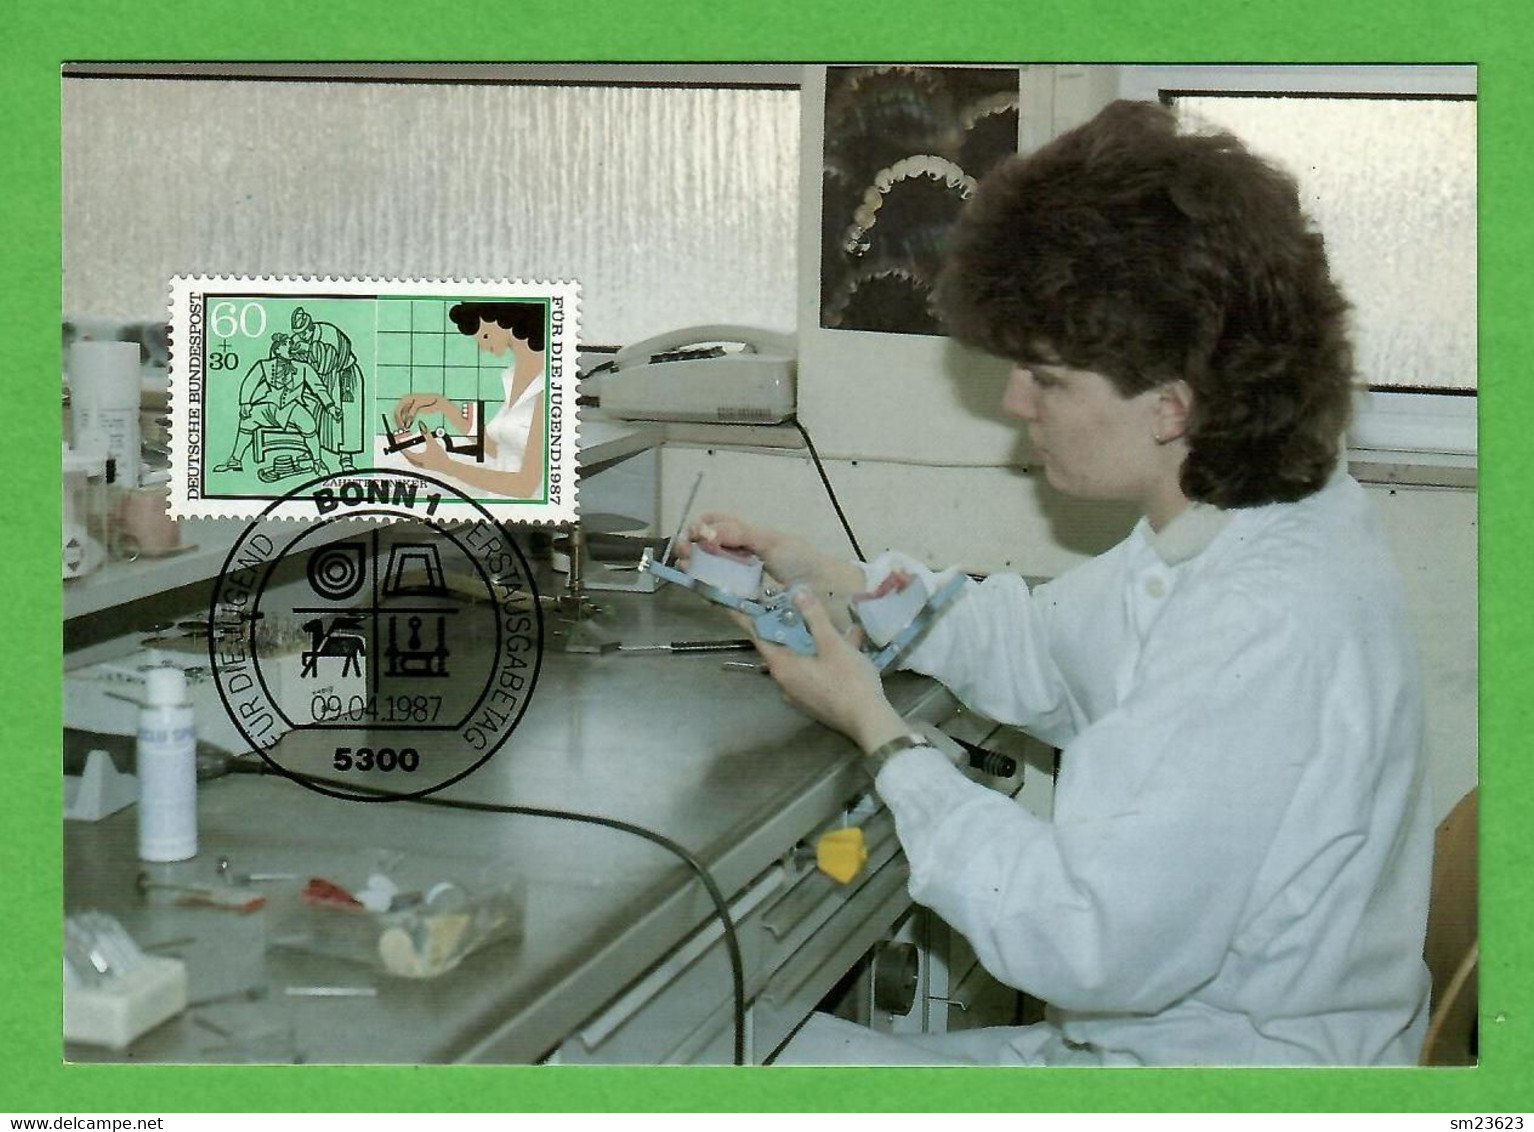 BRD 1987  Mi.Nr. 1316 , Handwerksberufe - Zahntechniker - Maximum Card - Erstausgabetag Bonn  09.04.1987 - 1981-2000